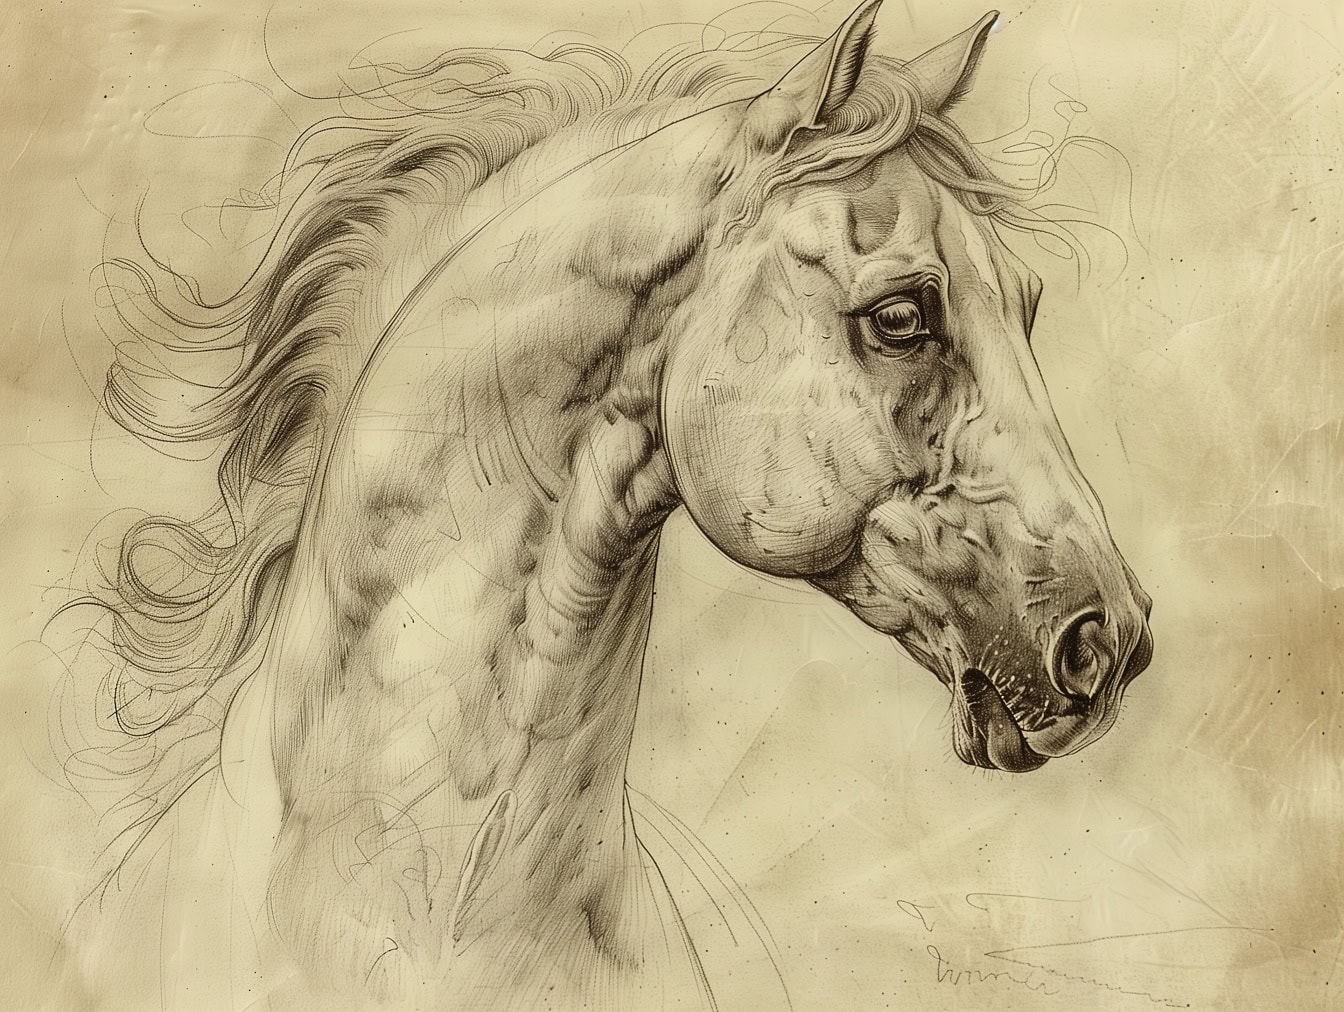 Esboço super detalhado da cabeça do cavalo com detalhes do nariz, boca e olho do garanhão